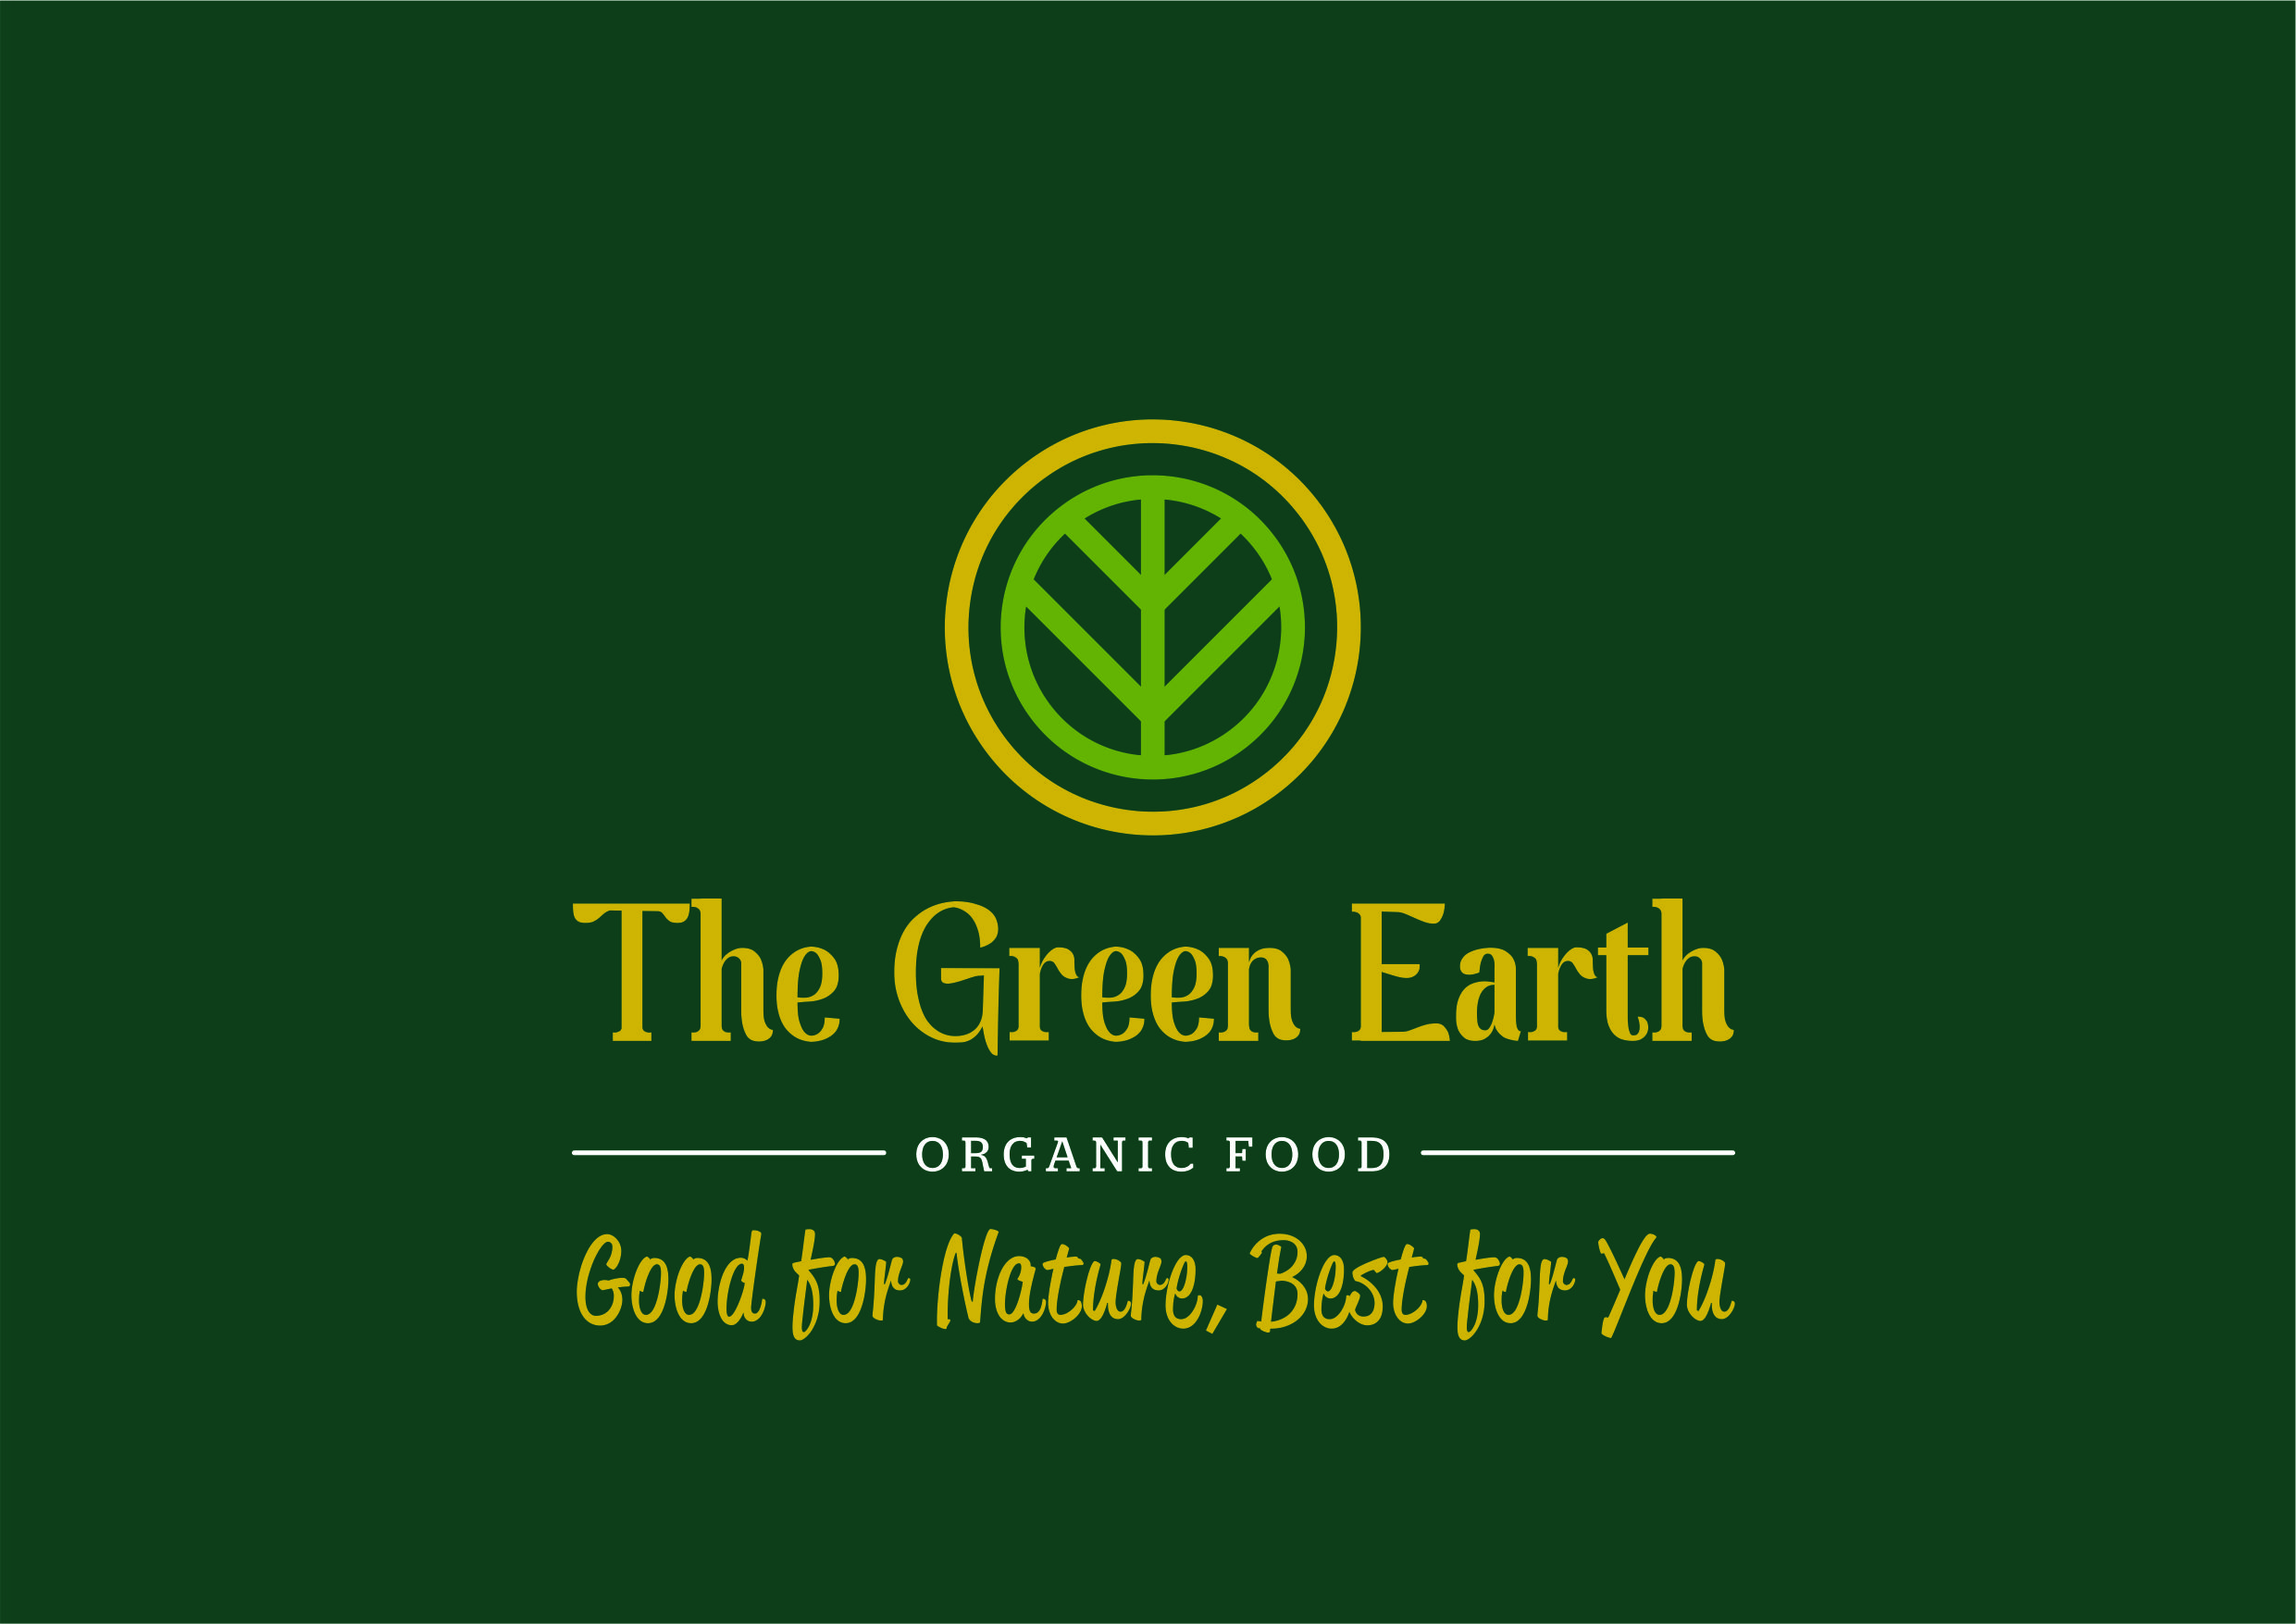 Greenearth Organic Products Pvt Ltd logo